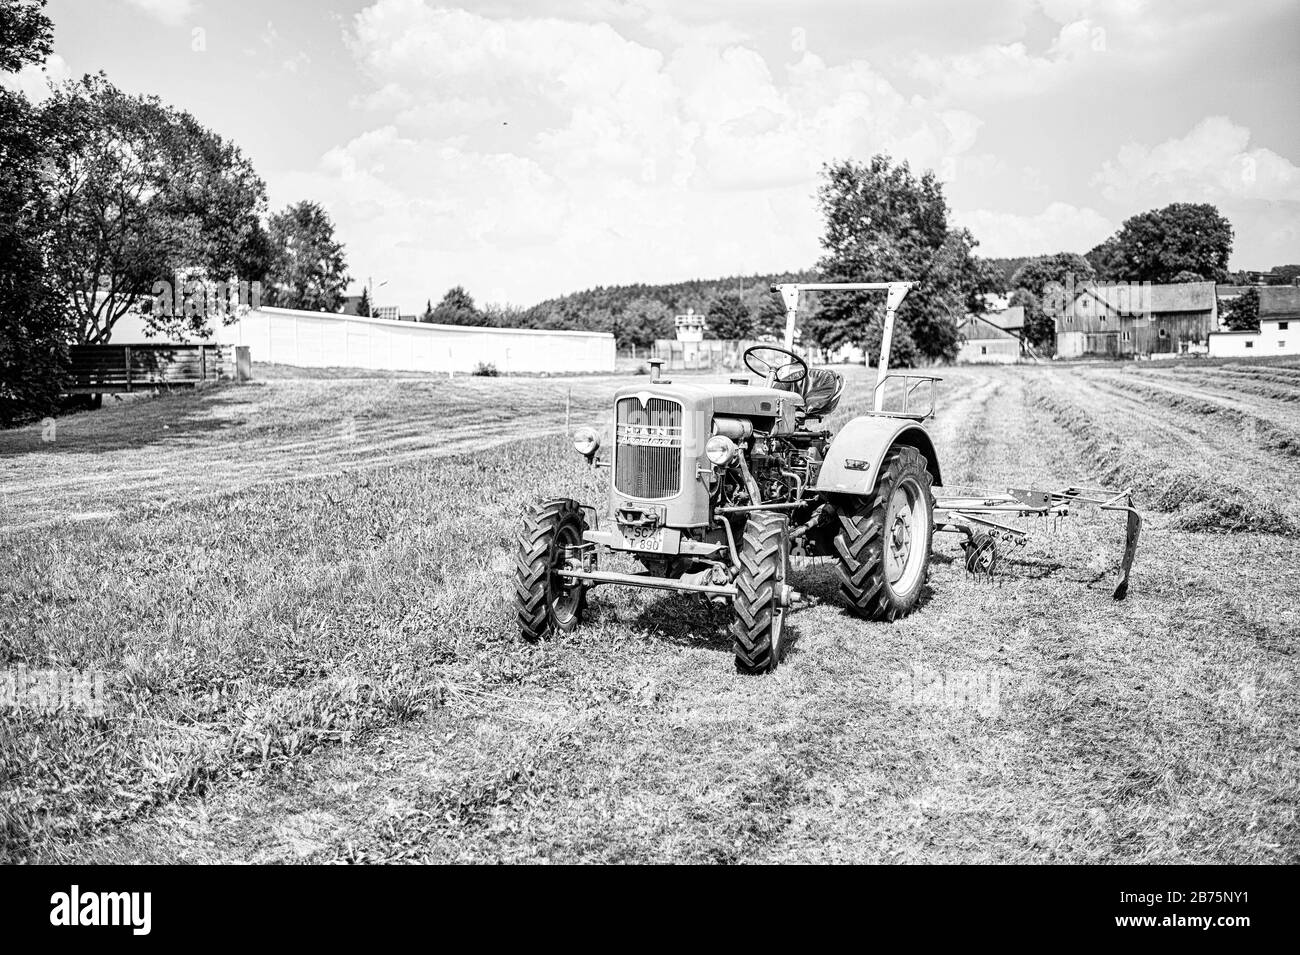 Un tracteur se trouve sur un terrain de Mödlareuth, en Haute-Franconie, à la frontière entre la Bavière et la Thuringe. Jusqu'en 1989, la frontière germano-allemande et le mur des frontières couraient directement au milieu du village, c'est pourquoi les troupes américaines locales l'appelaient "petit Berlin". [traduction automatique] Banque D'Images